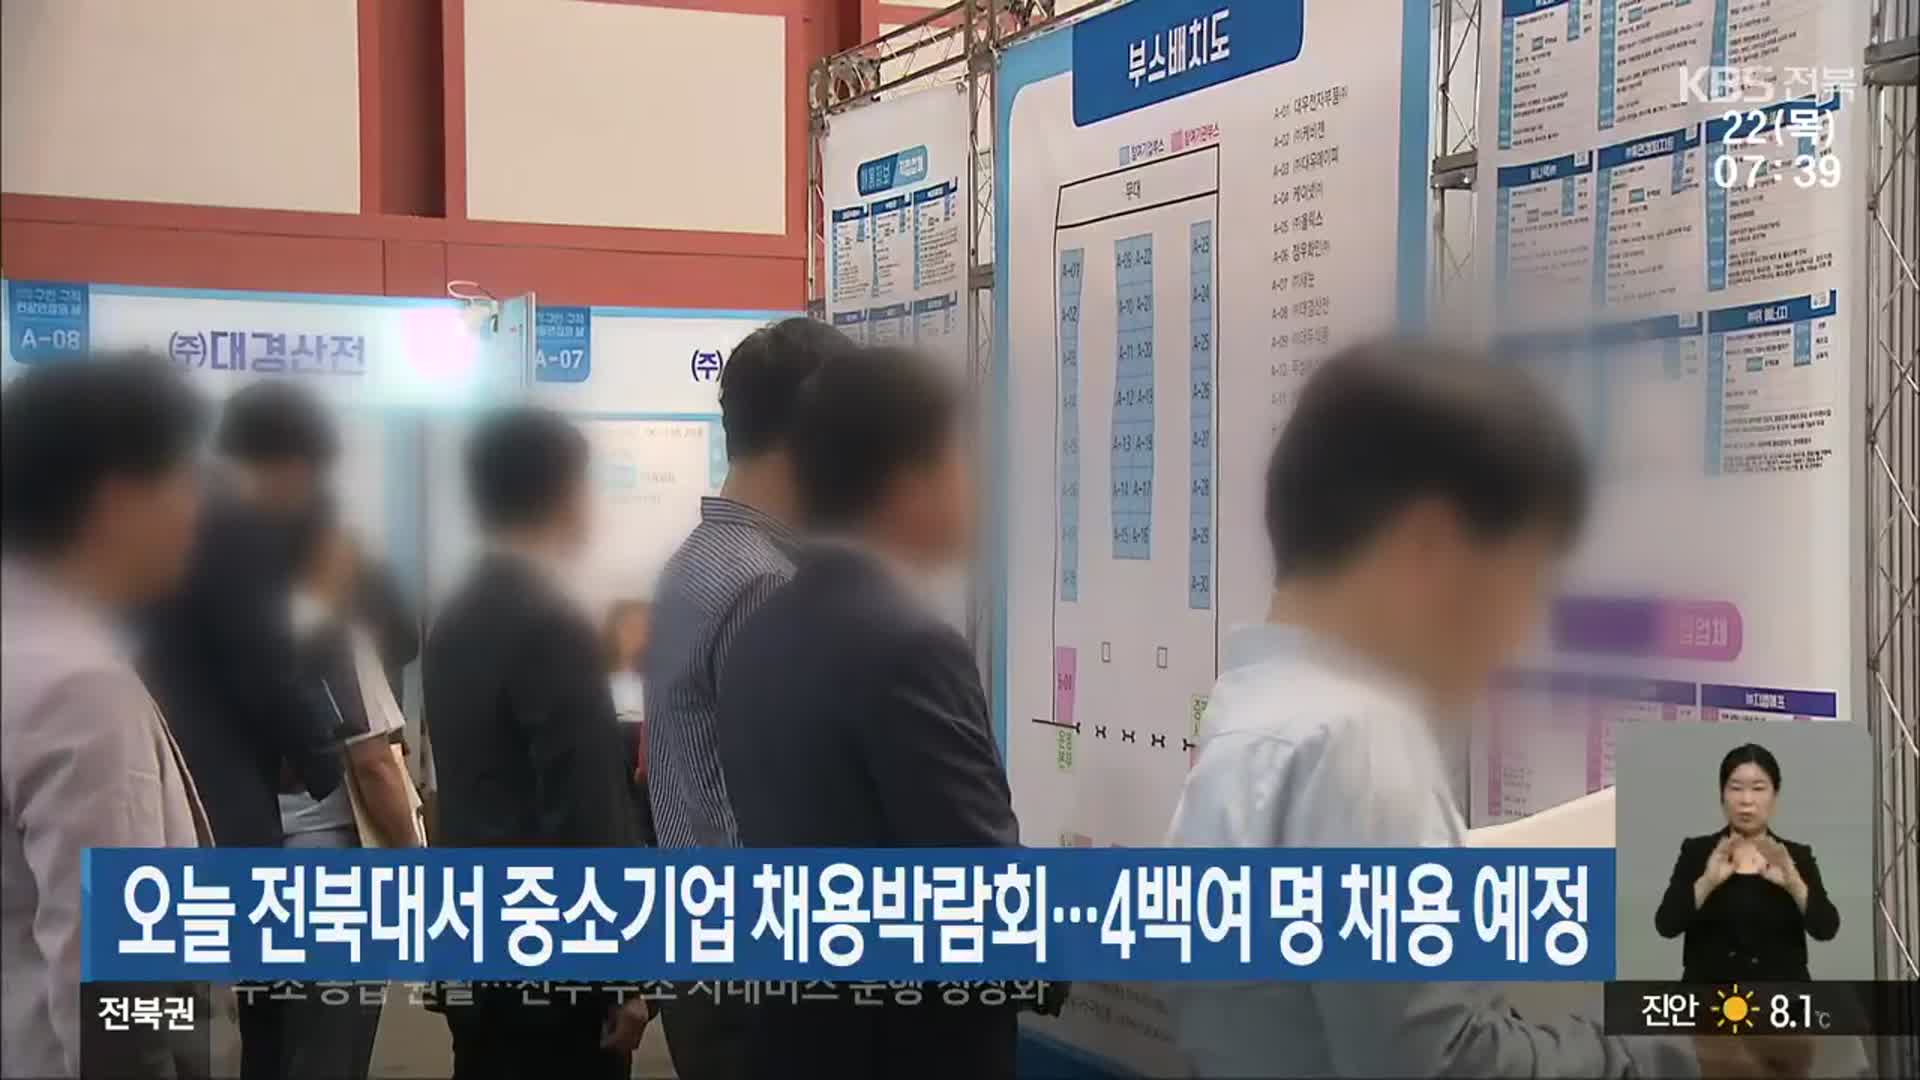 오늘 전북대서 중소기업 채용박람회…4백여 명 채용 예정